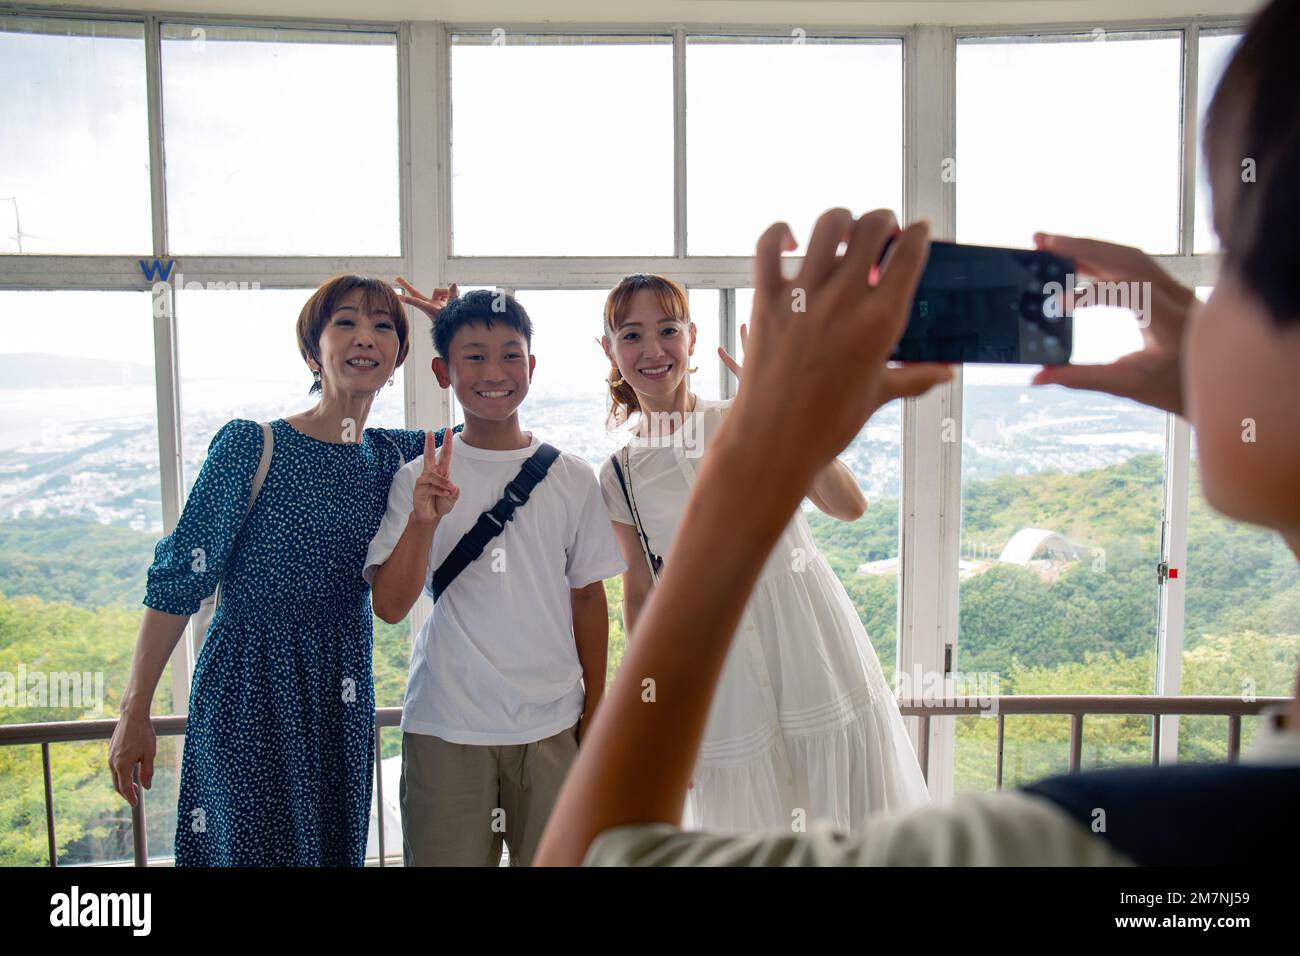 Un garçon utilisant son téléphone portable pour prendre une photo de trois personnes, un garçon de 13 ans, sa mère et un ami. Banque D'Images